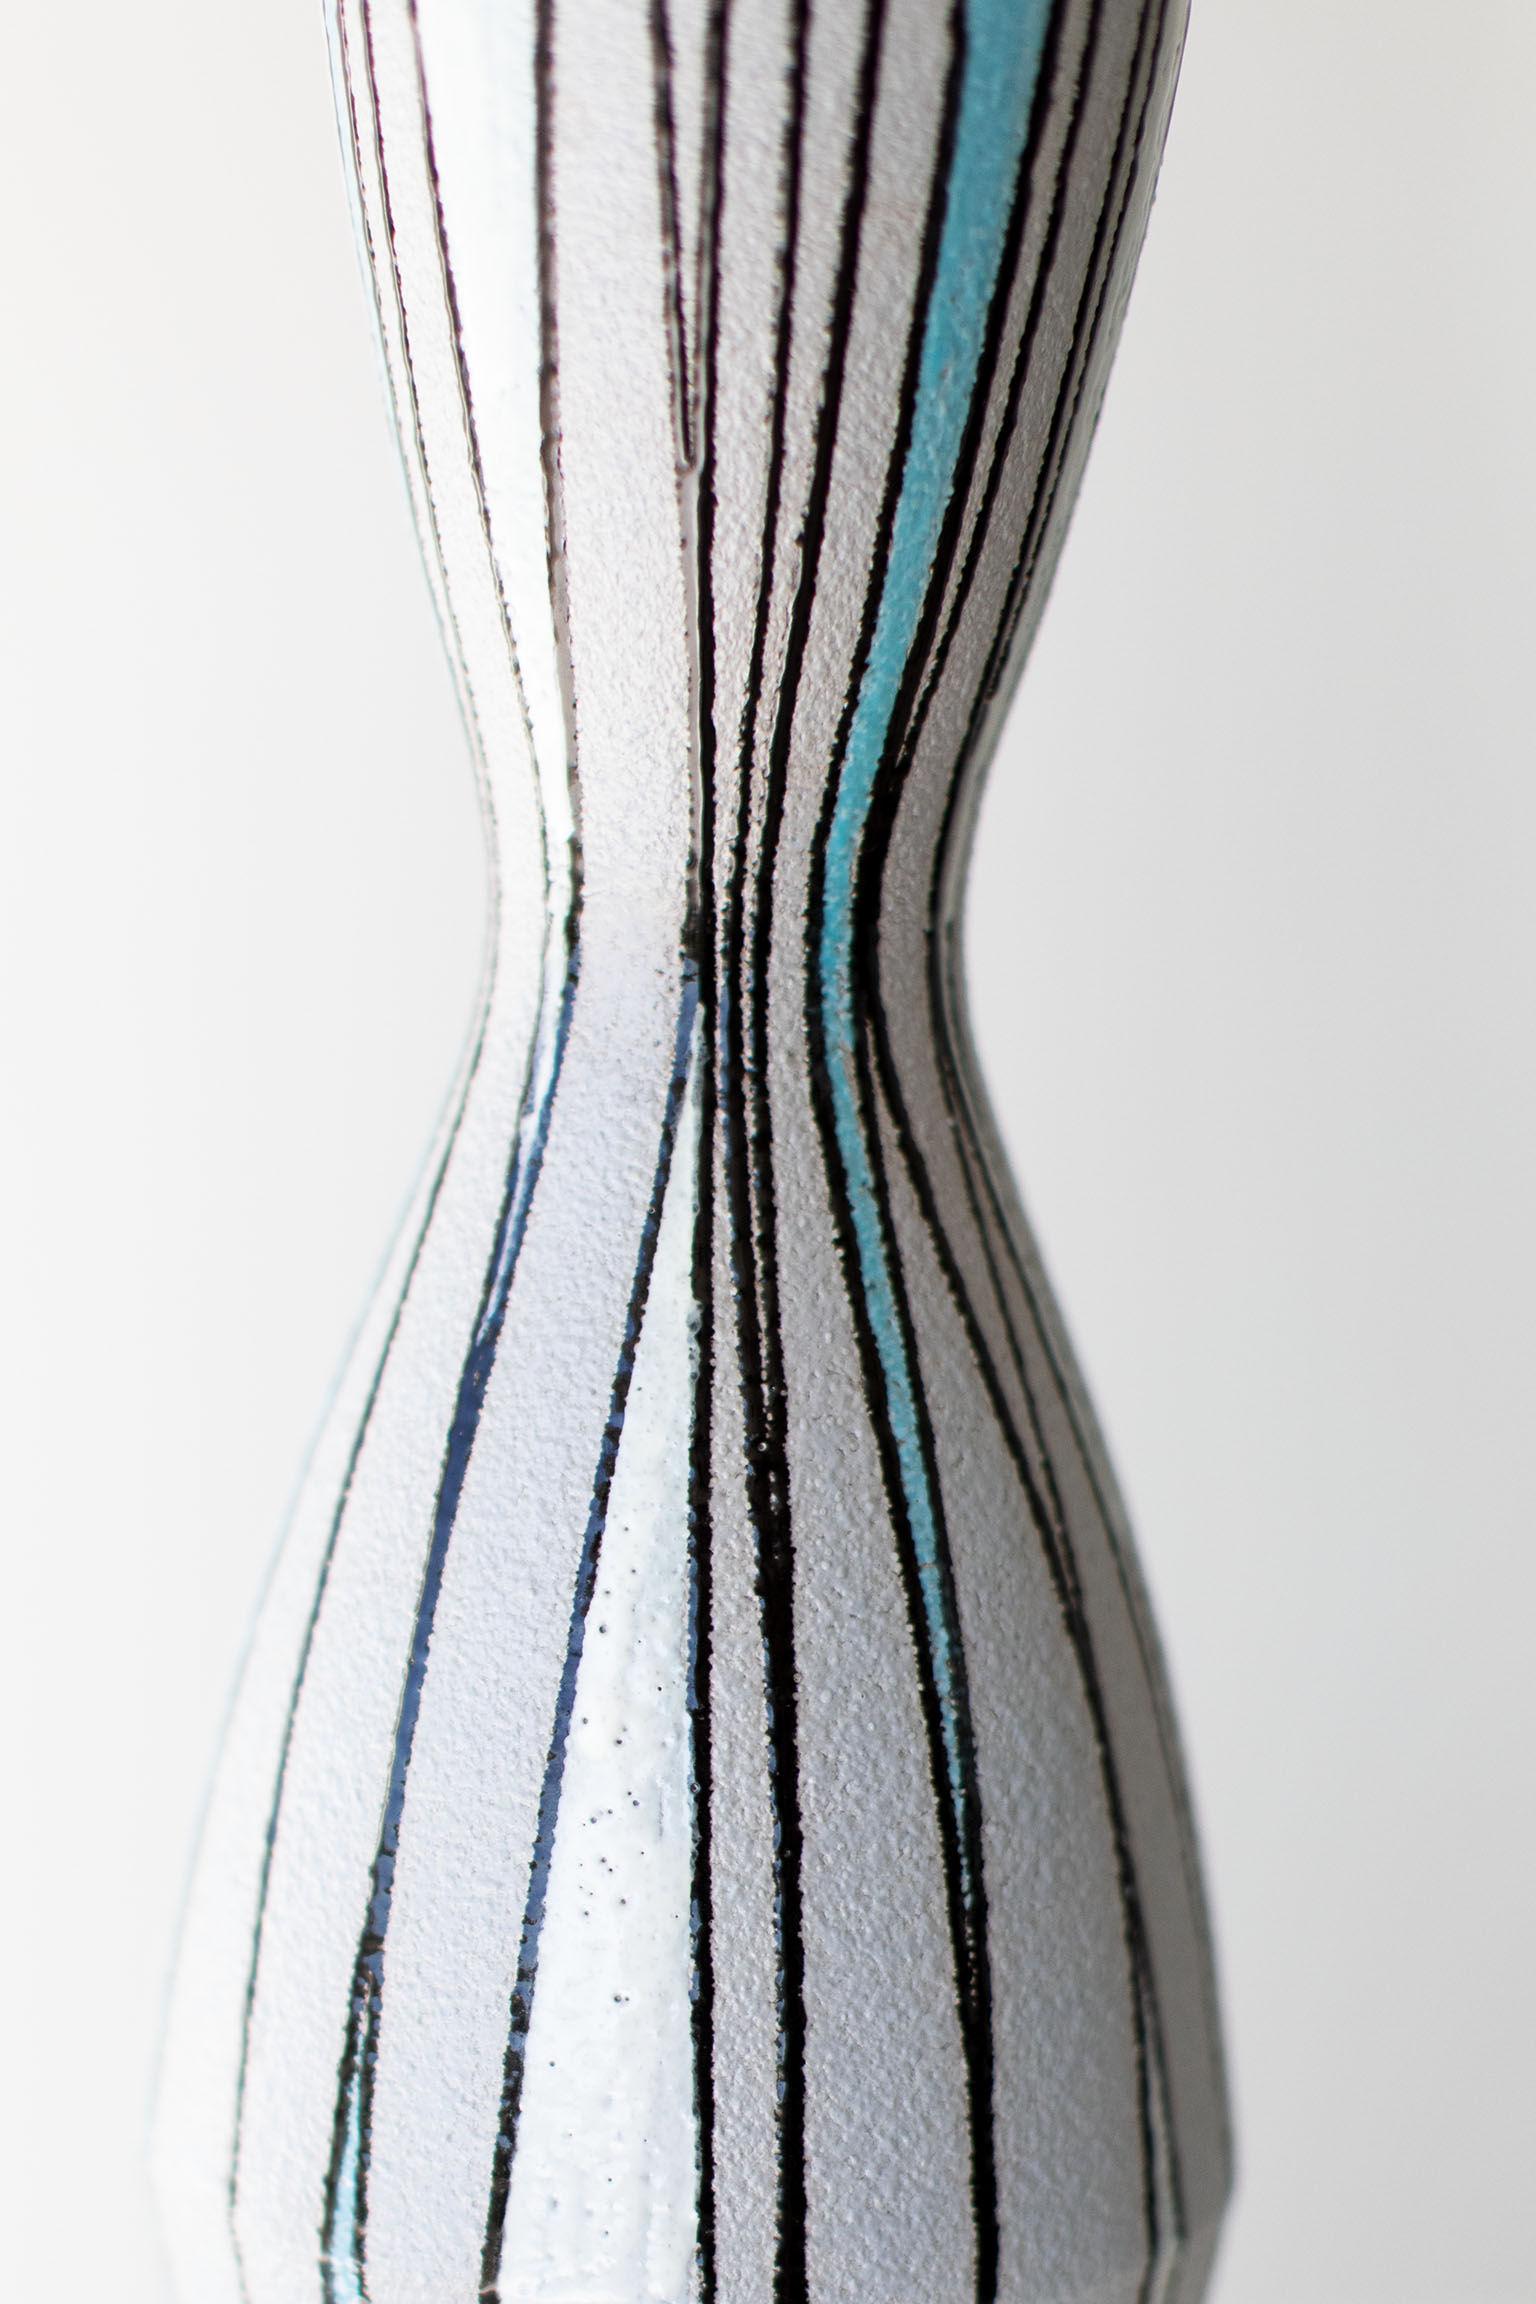 Italian Fratelli Fanciullacci Striped Vase for Ebeling Reuss For Sale